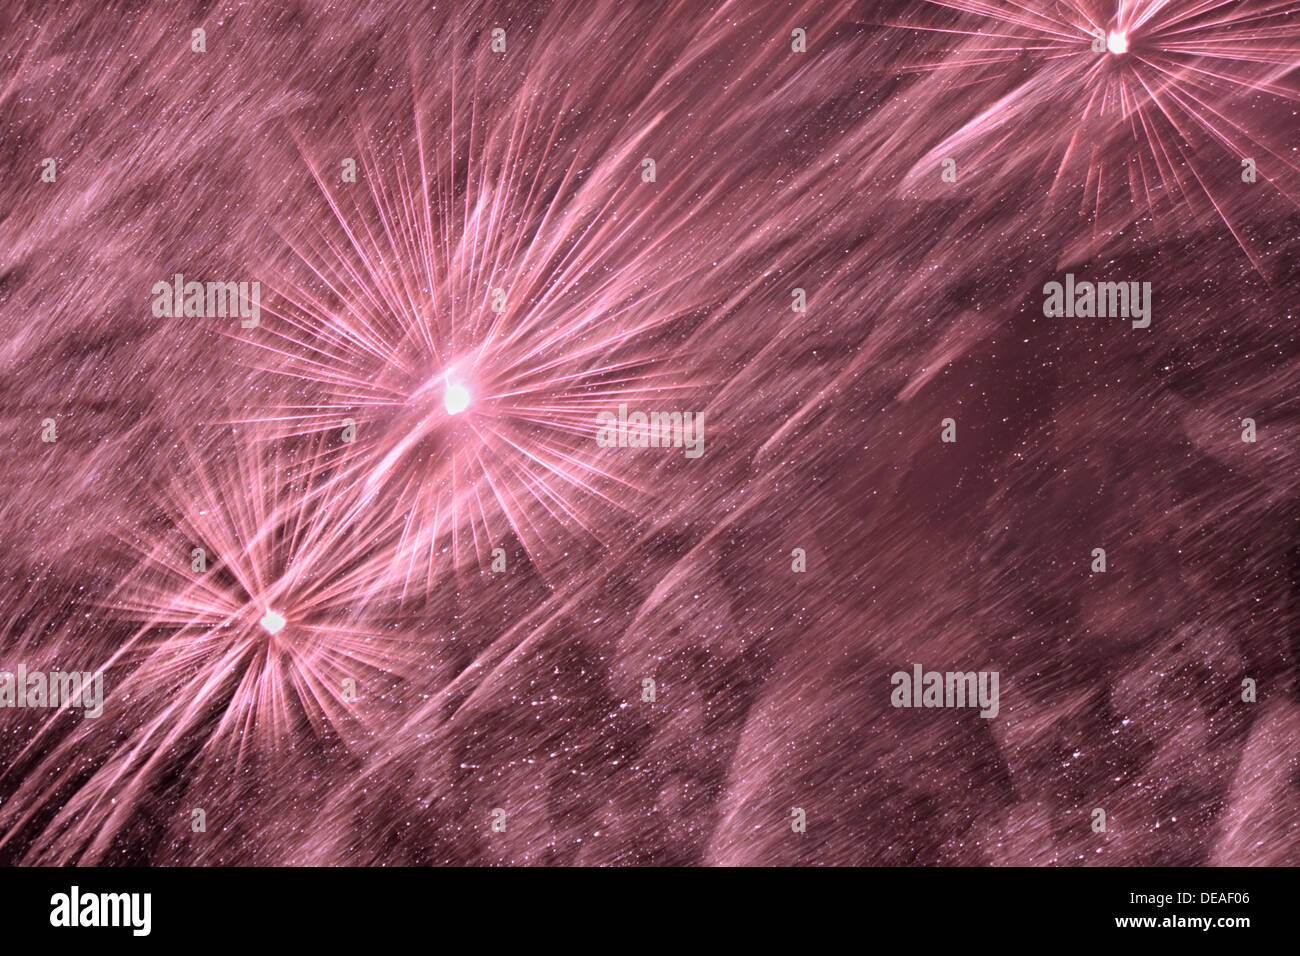 violet fireworks in night sky Stock Photo